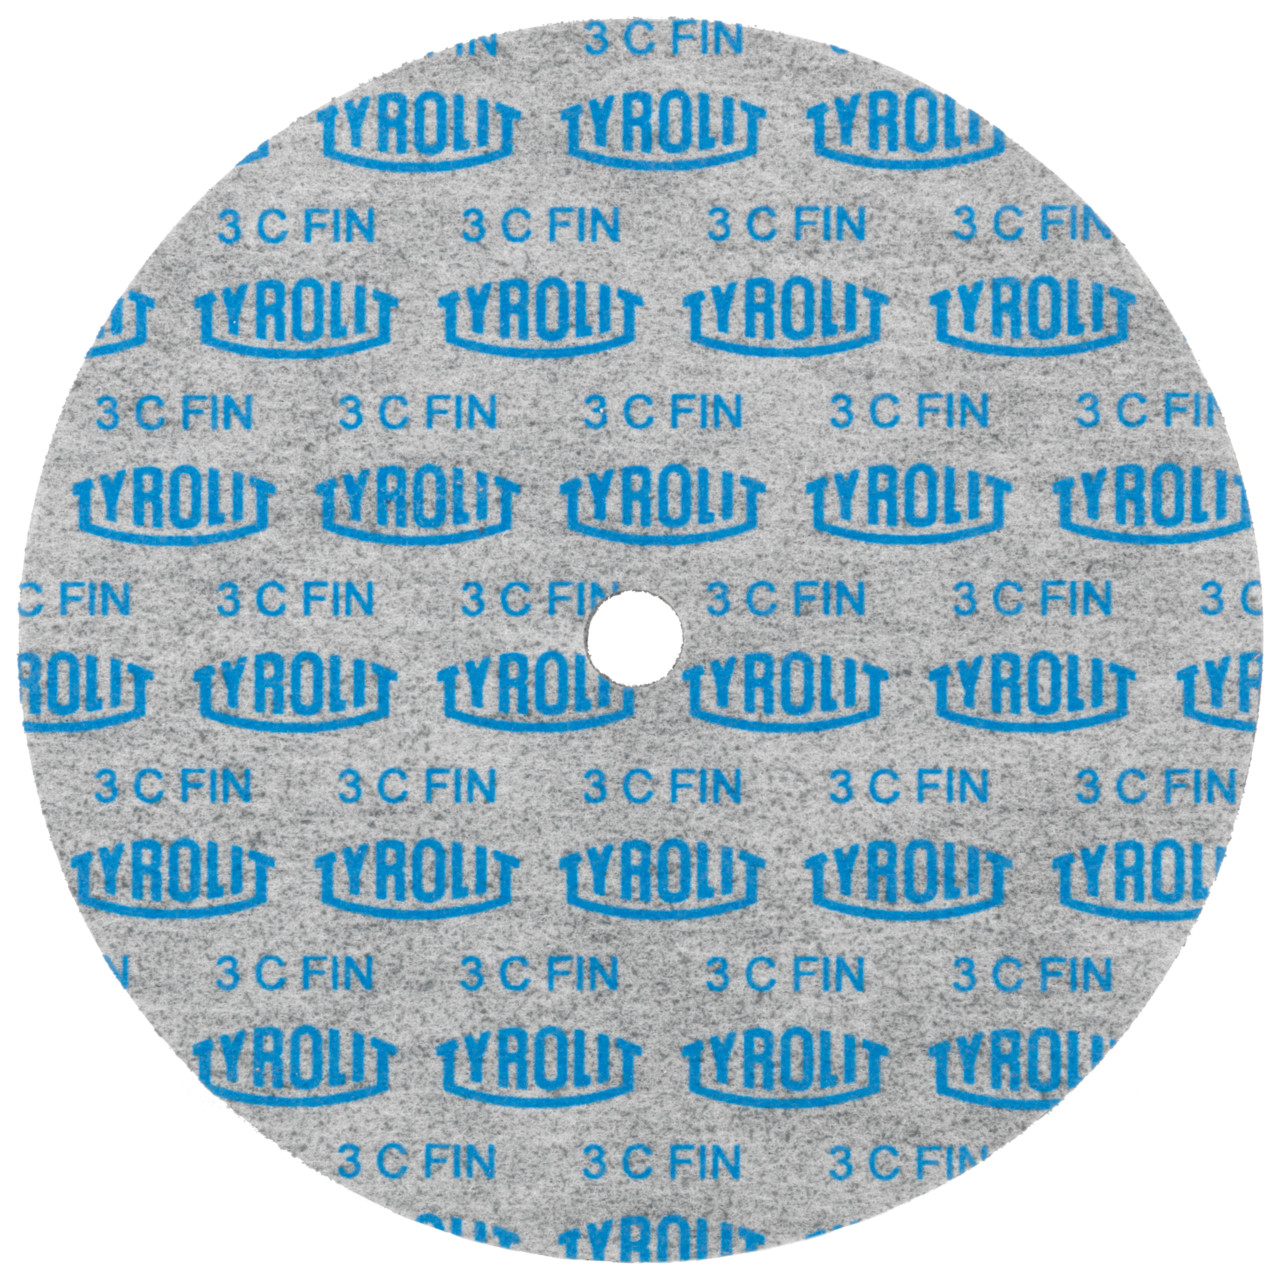 Tyrolit Discos compactos prensados DxDxH 152x25x12,7 Inserto universal, 8 A GROB, forma: 1, Art. 34190303